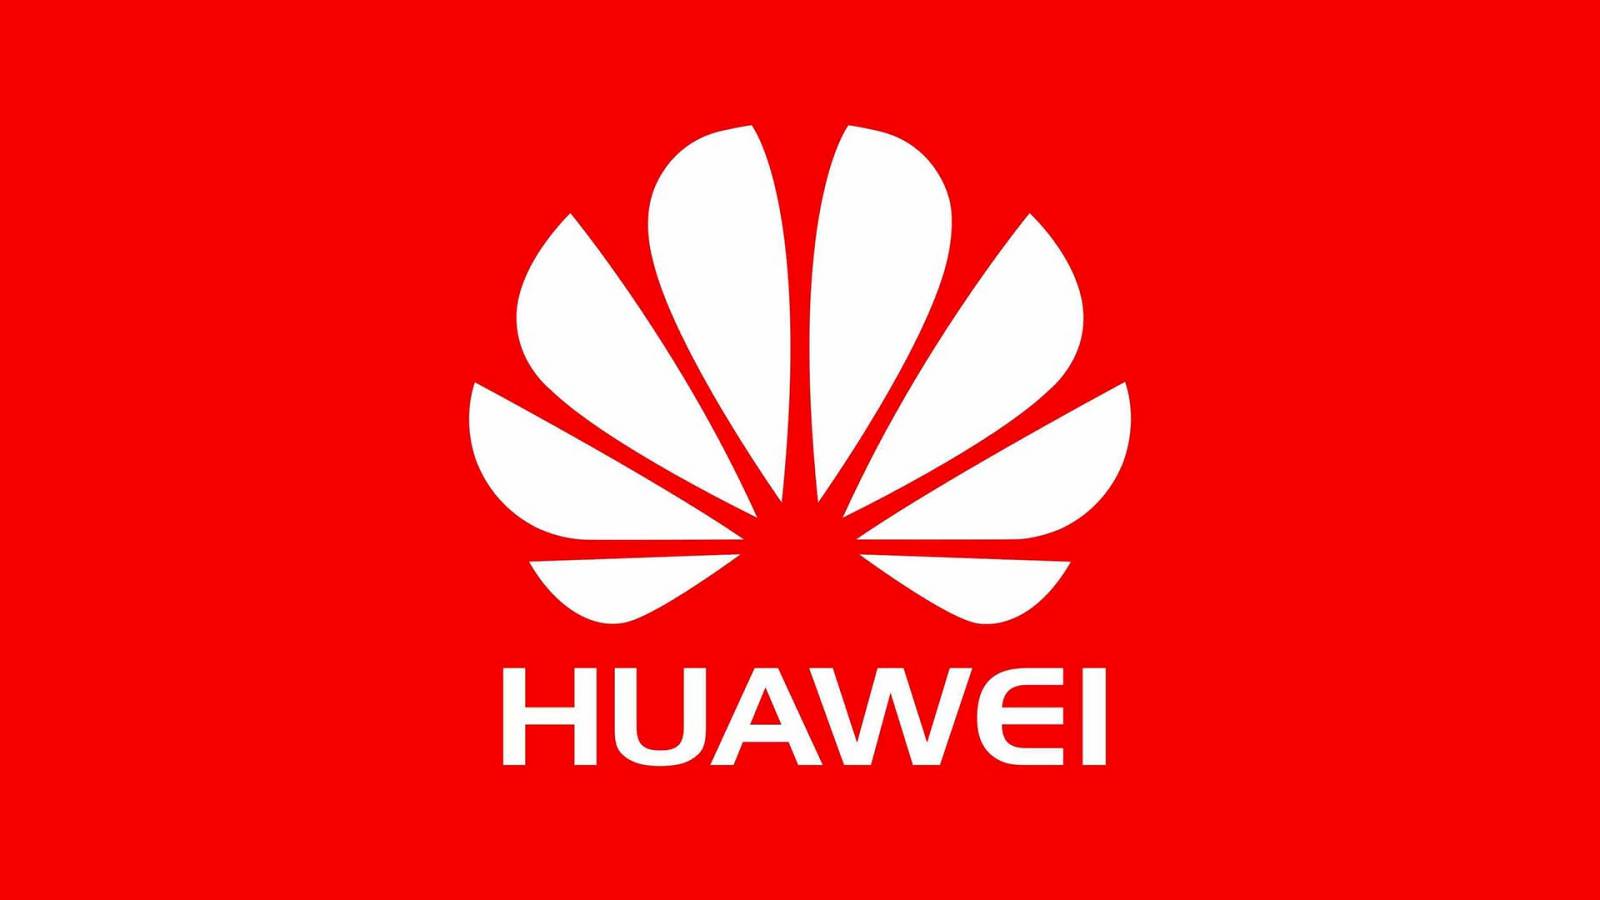 Huawei semblait complètement IMPOSSIBLE. Surprenant beaucoup de monde